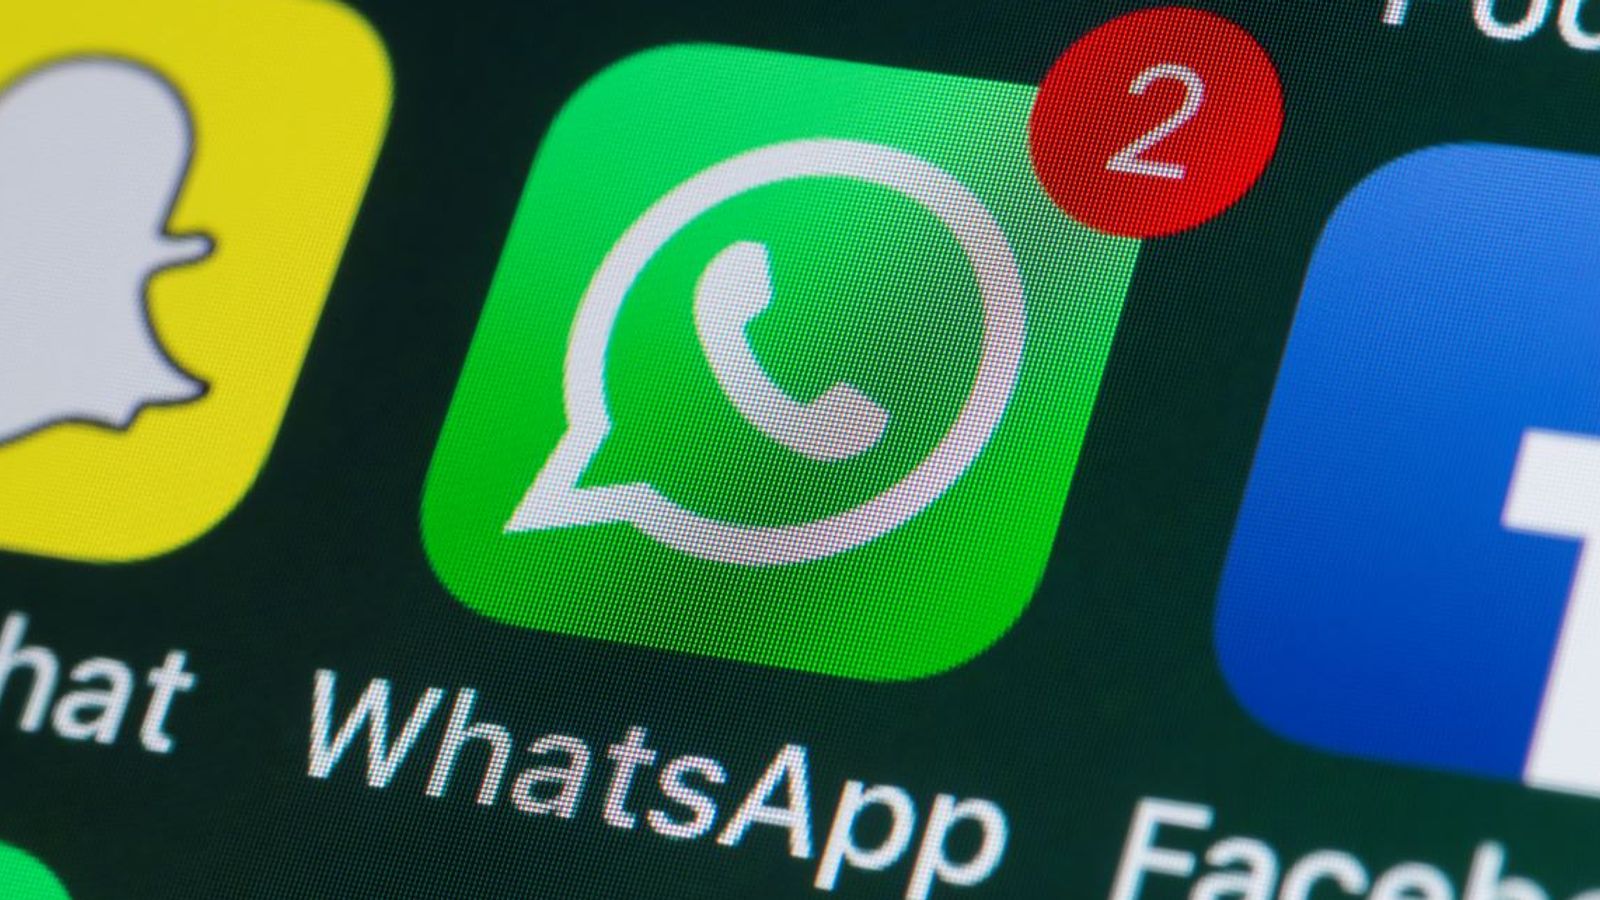 WhatsApp confirme que les problèmes ont été résolus après que plus de 40 000 personnes au Royaume-Uni ont signalé des problèmes |  Actualités scientifiques et techniques